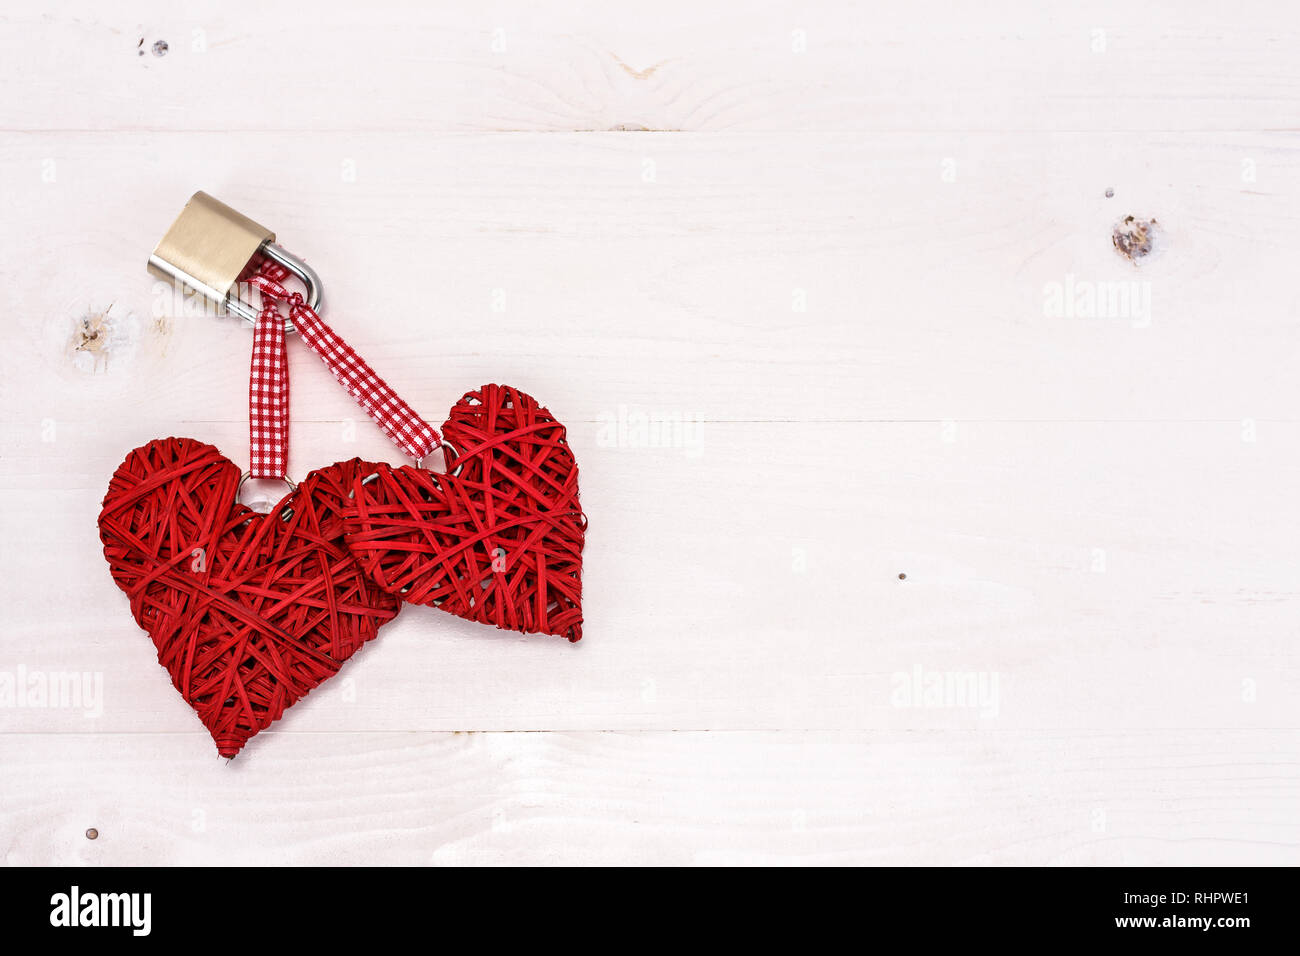 Zwei rote Herzen mit einem Vorhängeschloss an einem weißen Holz- Hintergrund gesperrt. Valentines Tag Karte Konzept. Stockfoto